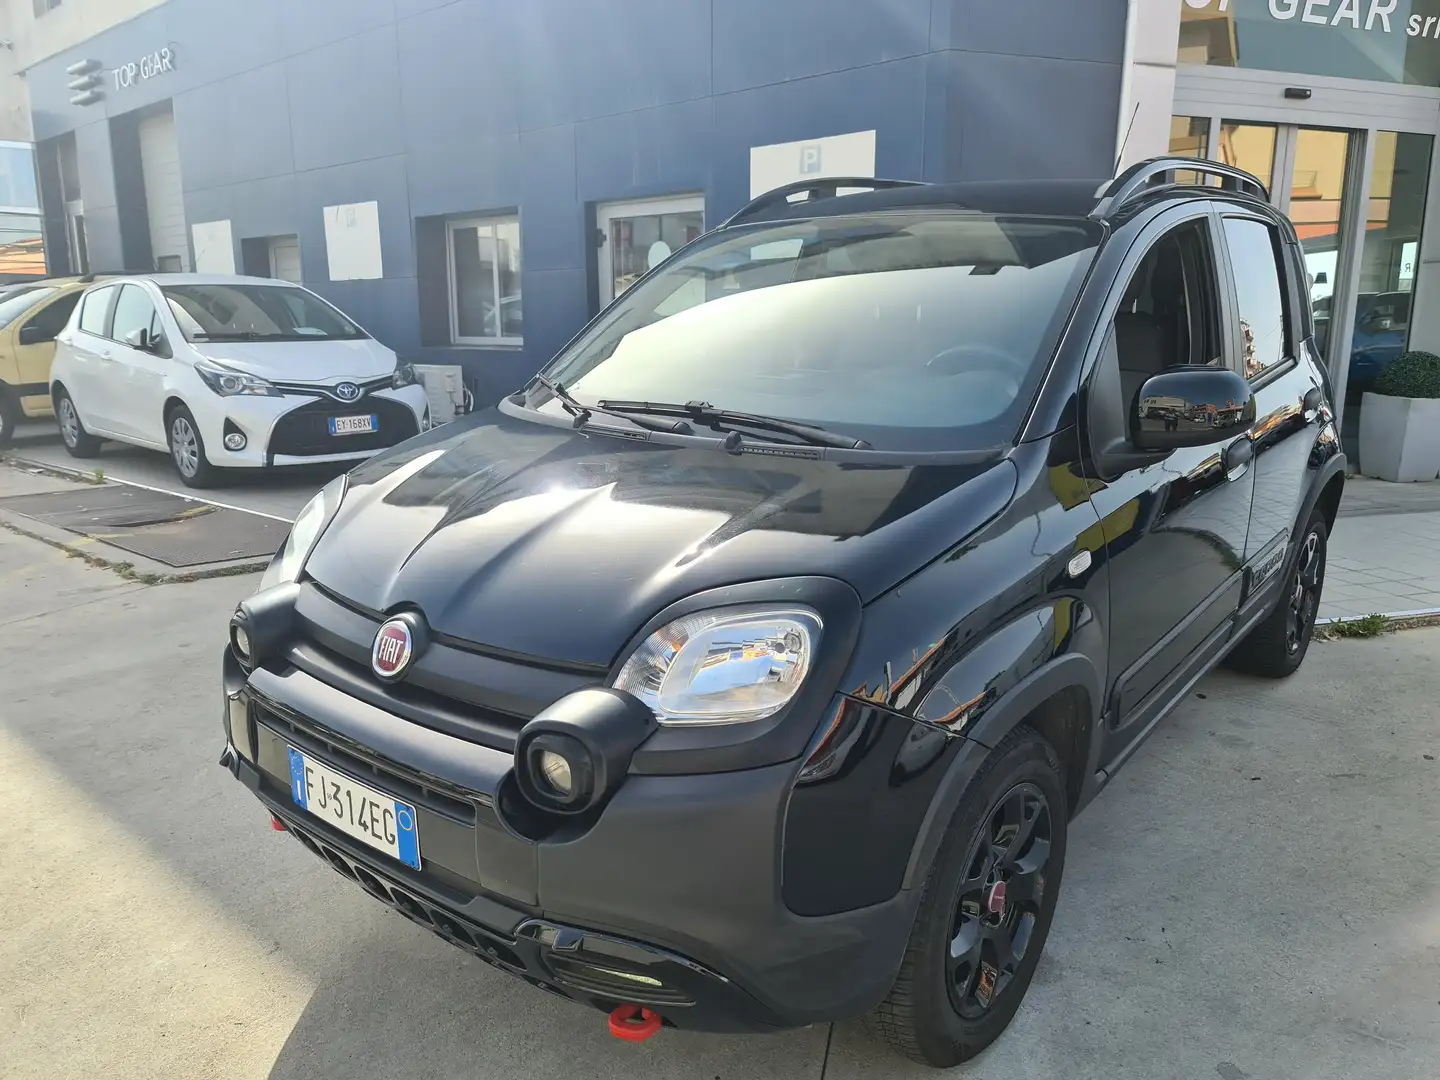 usato Fiat Panda City car a Gioia Tauro - Reggio Calabria per € 14.900,-